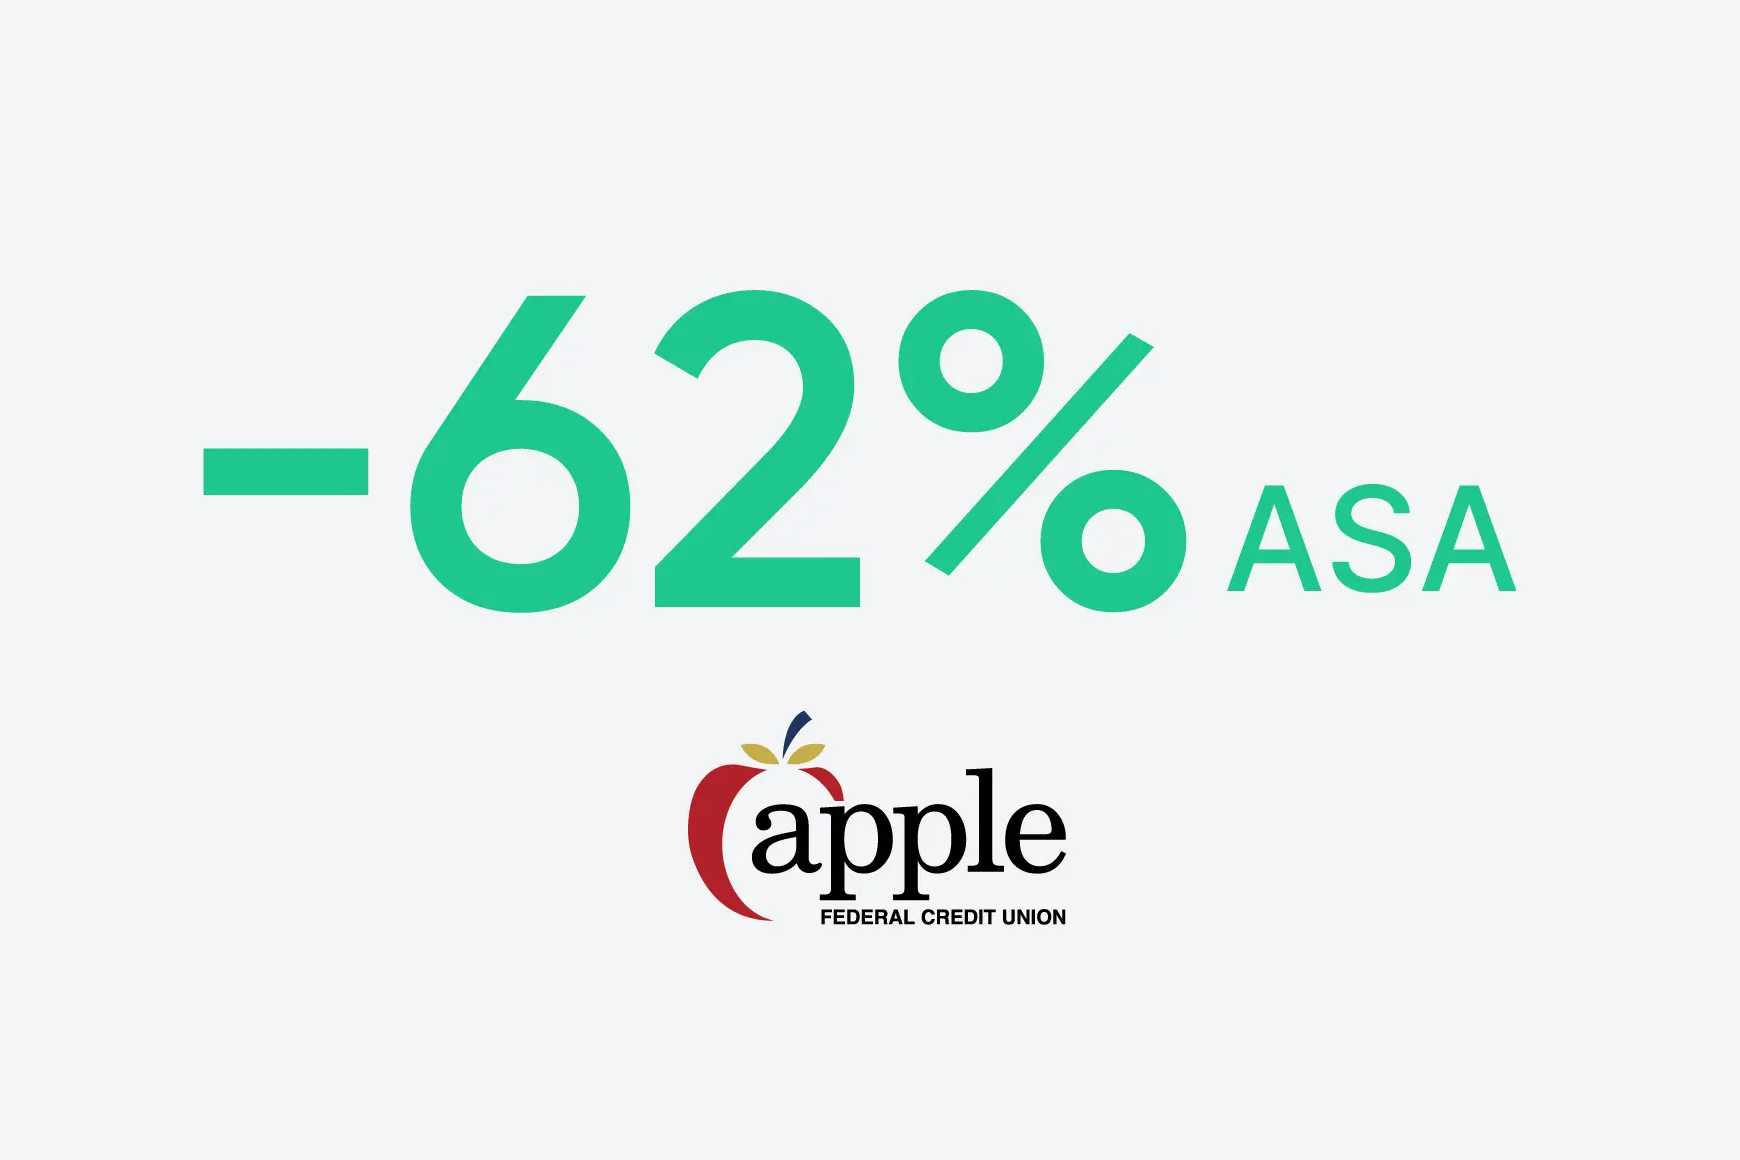 L'Apple Federal Credit Union ha ridotto l'ASA del 62%